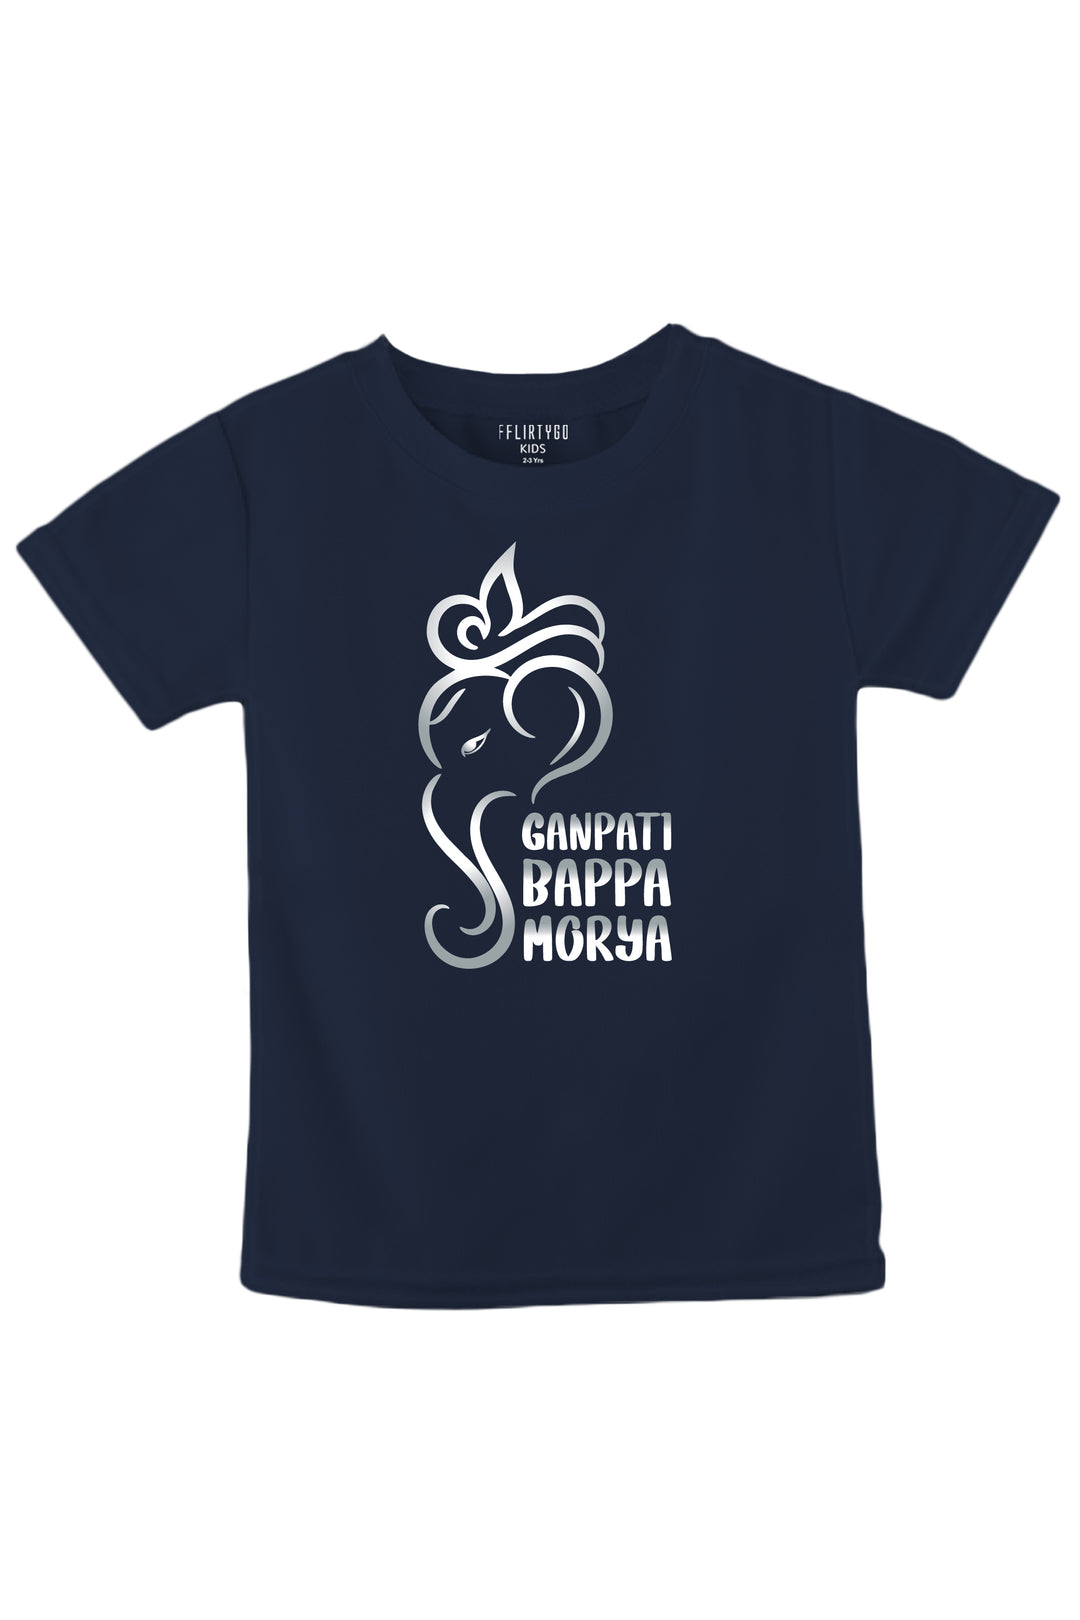 Ganpati Bappa Morya Kids T Shirt